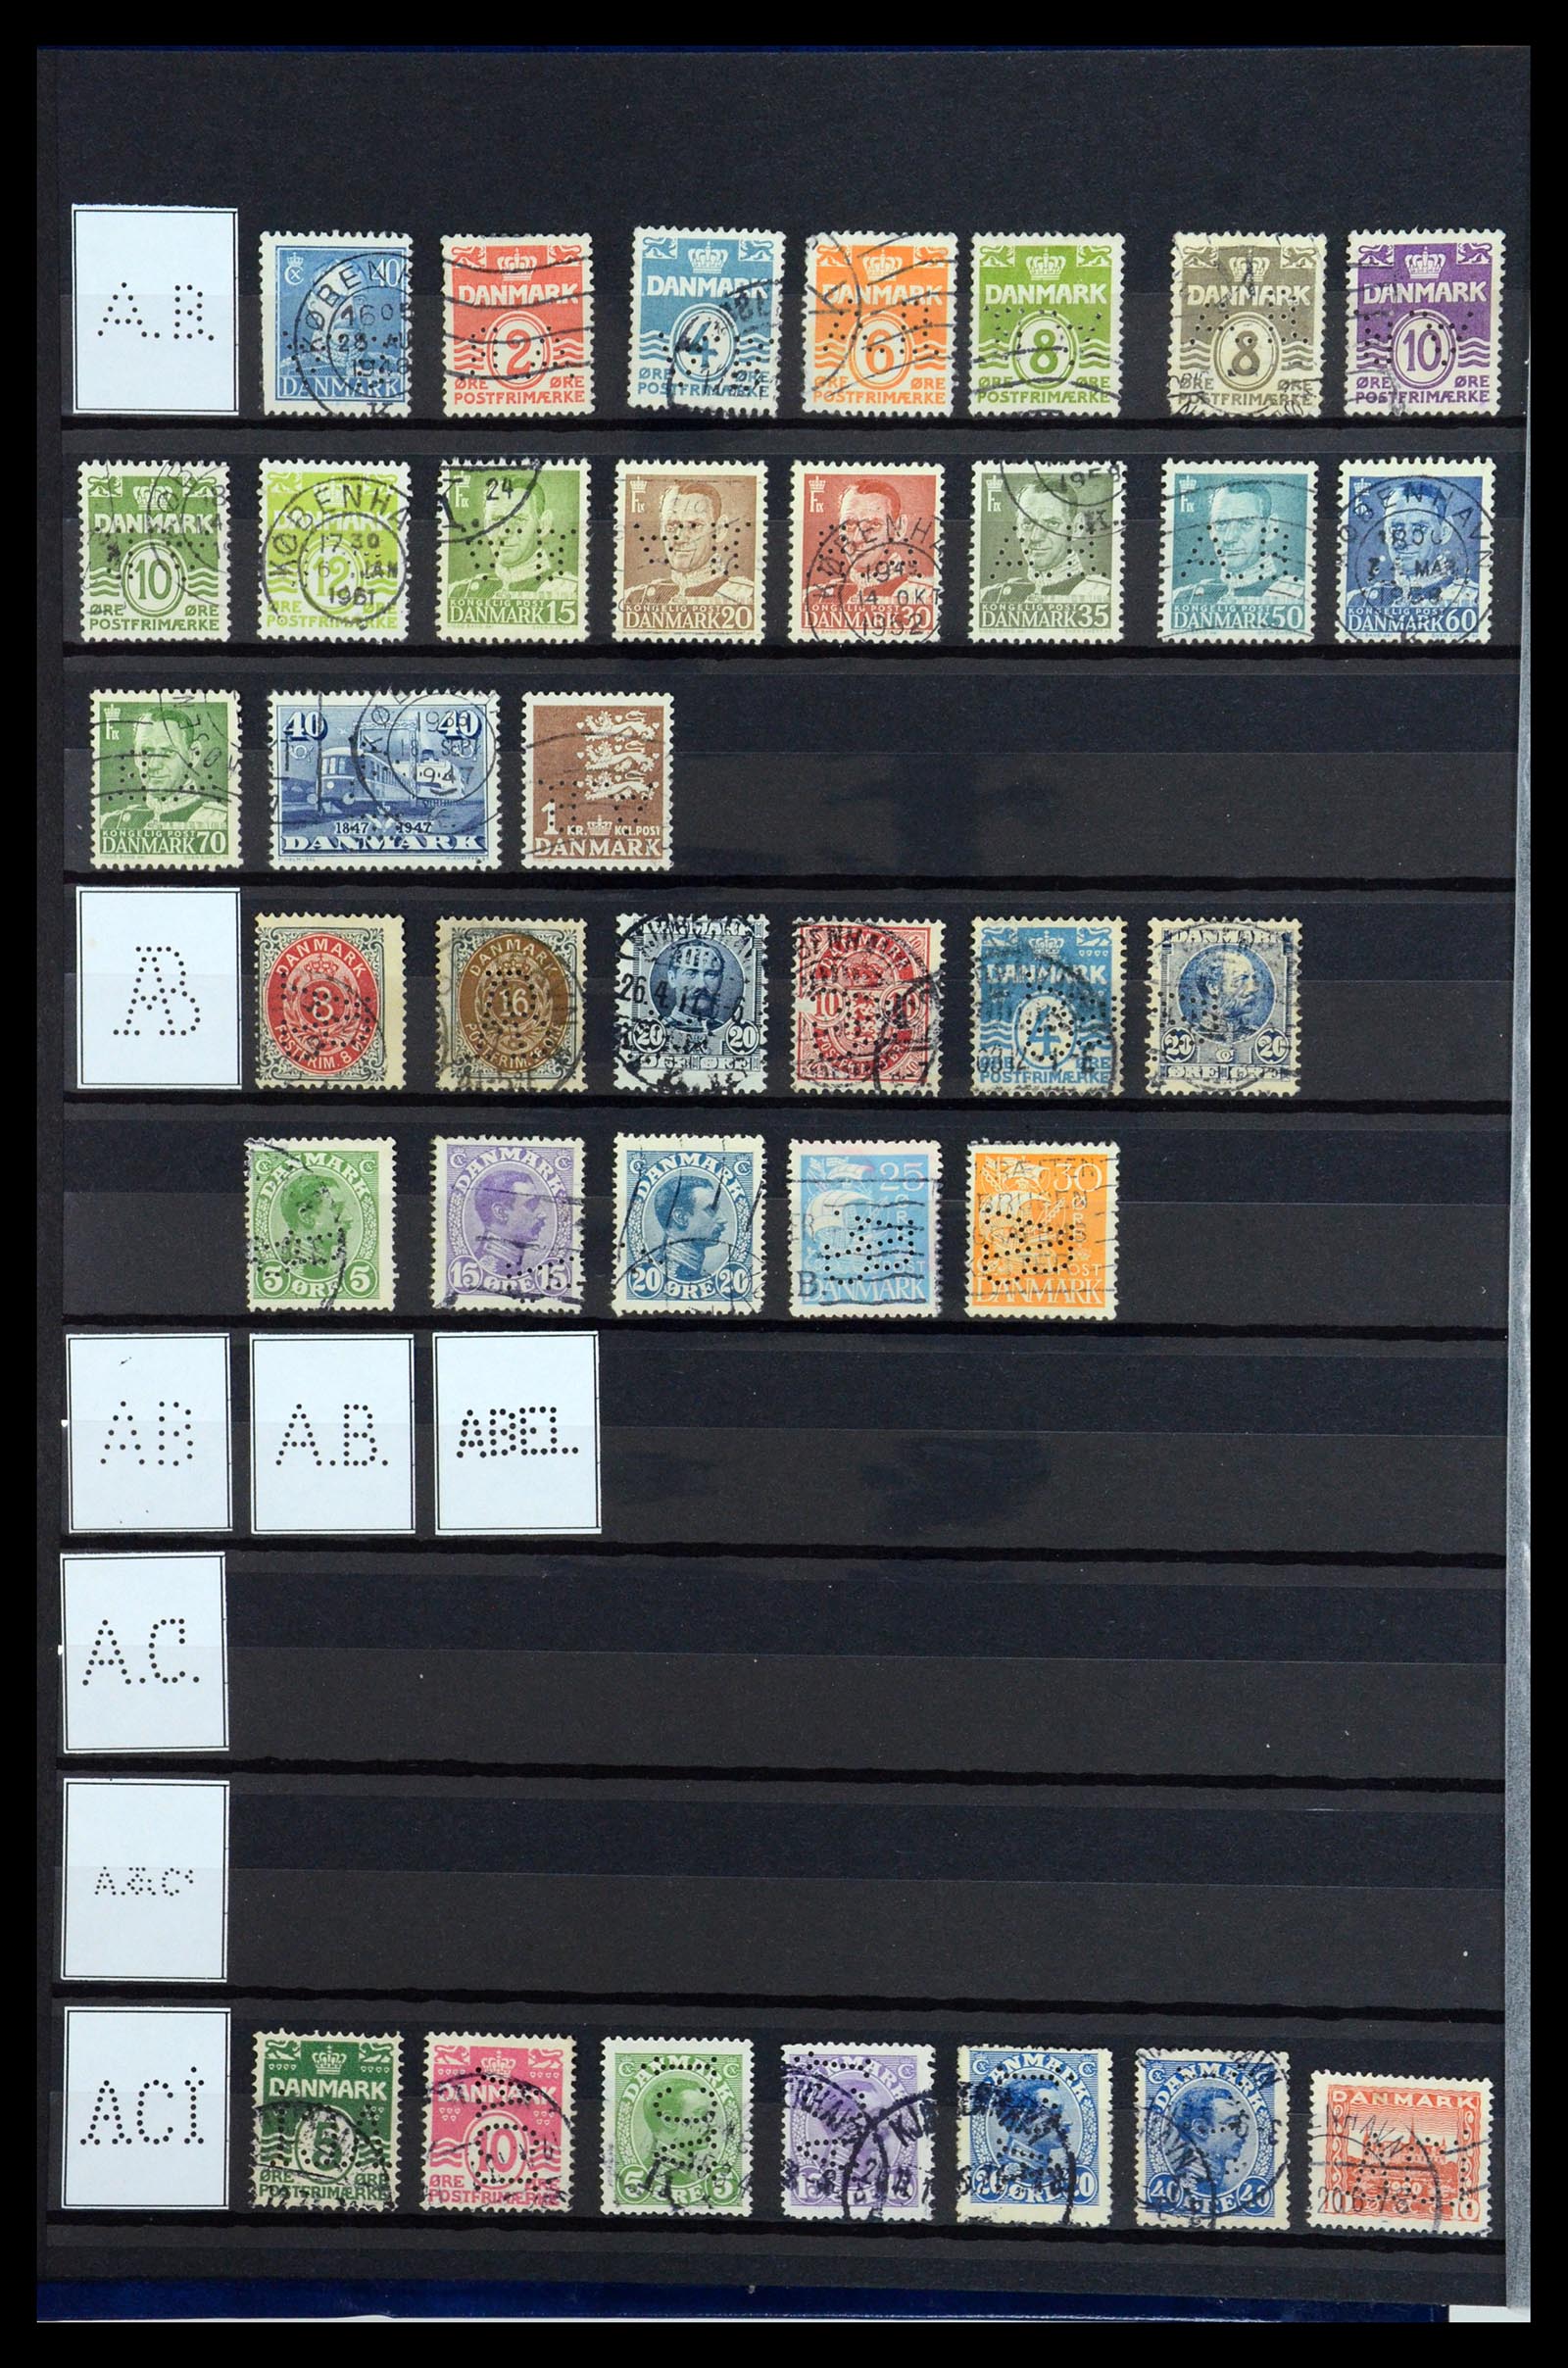 36396 002 - Postzegelverzameling 36396 Denemarken perfins.